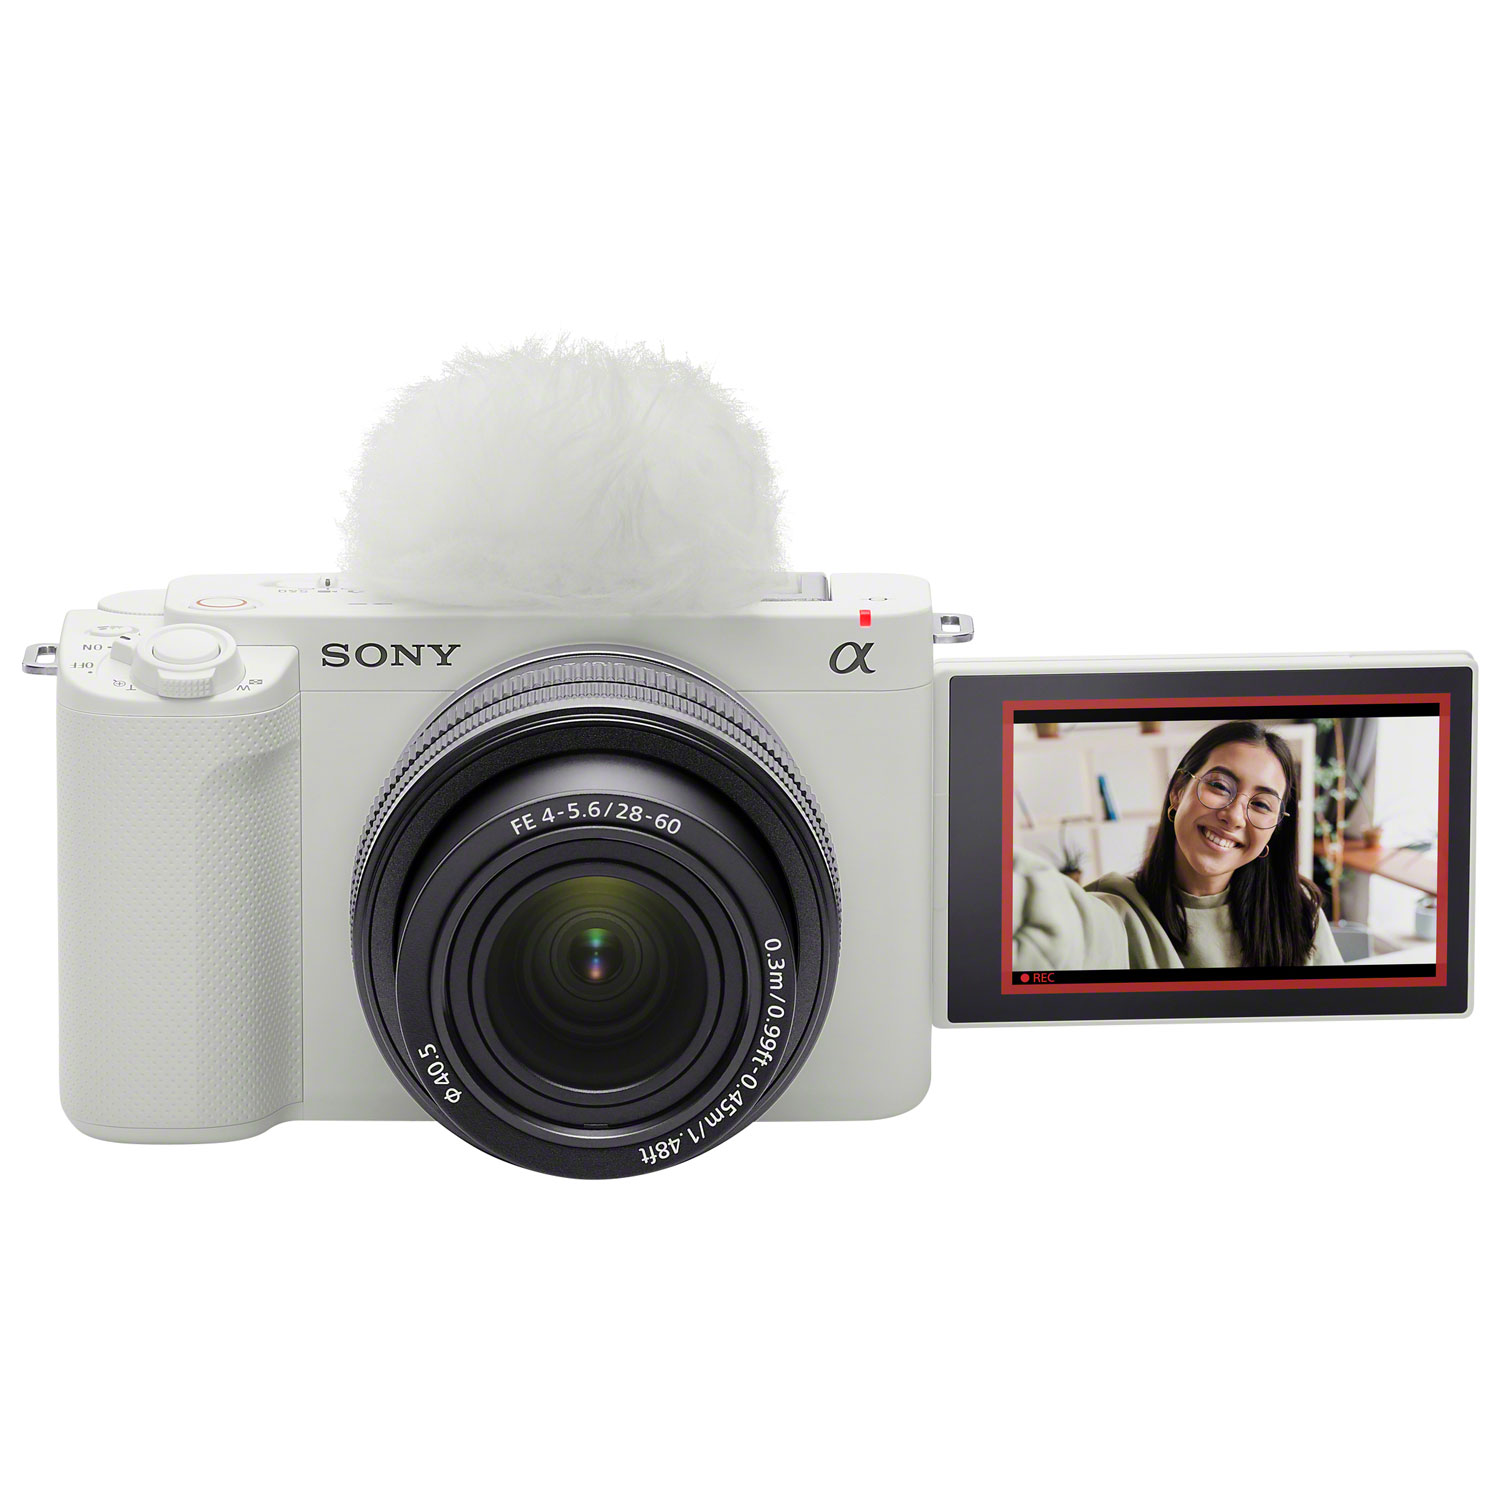 Sony Alpha ZV-E1 Full-Frame Interchangeable Lens Mirrorless Vlogger Camera with 28-60mm Lens Kit - White